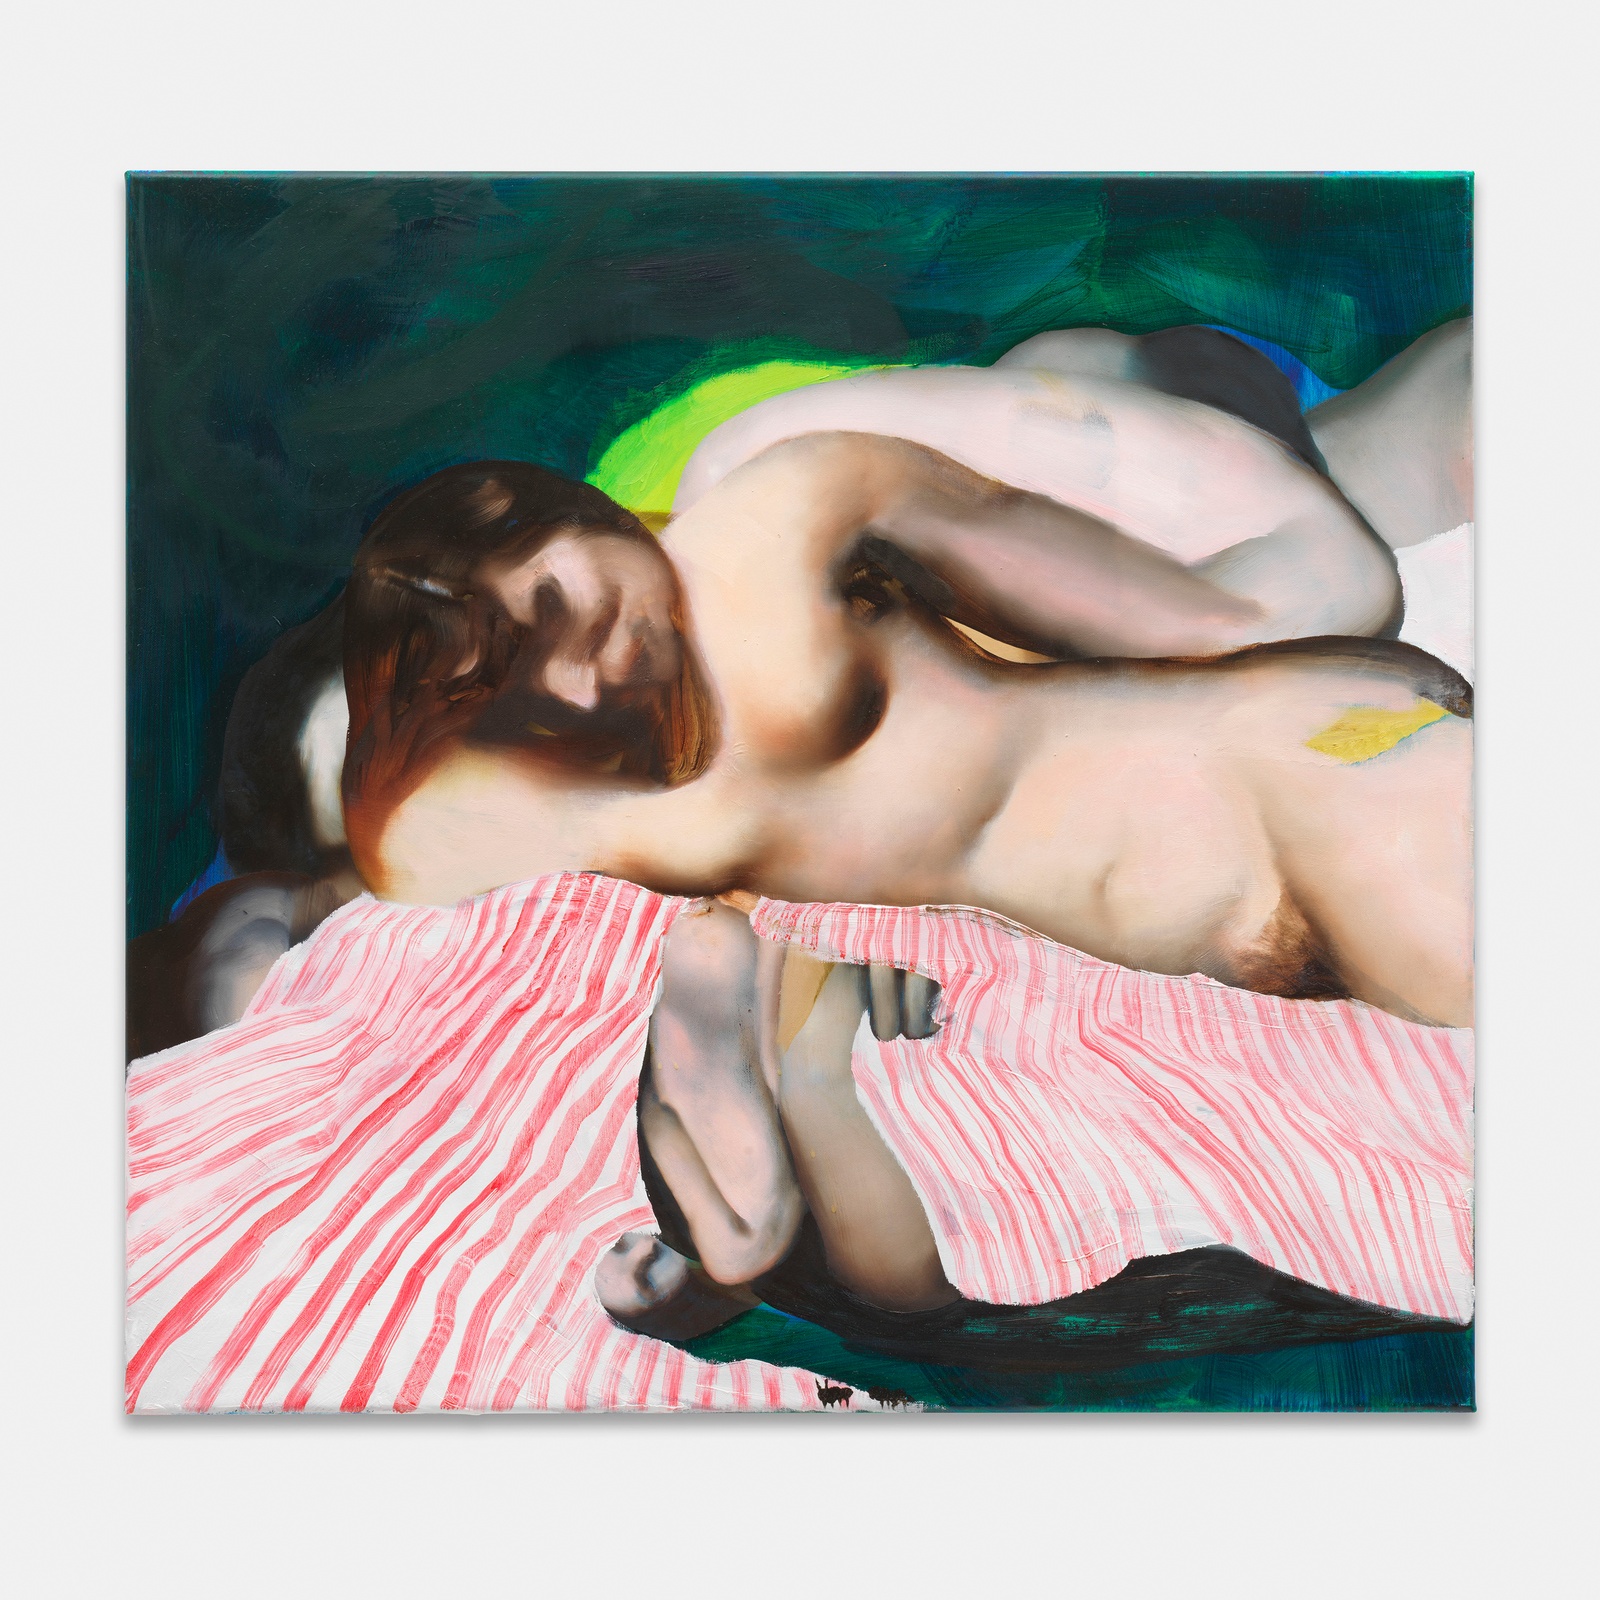 Ambera WellmannMorgensteorra, 2023oil on canvas62.9 x 67.9 cm | 24 3/4 x 26 3/4 in